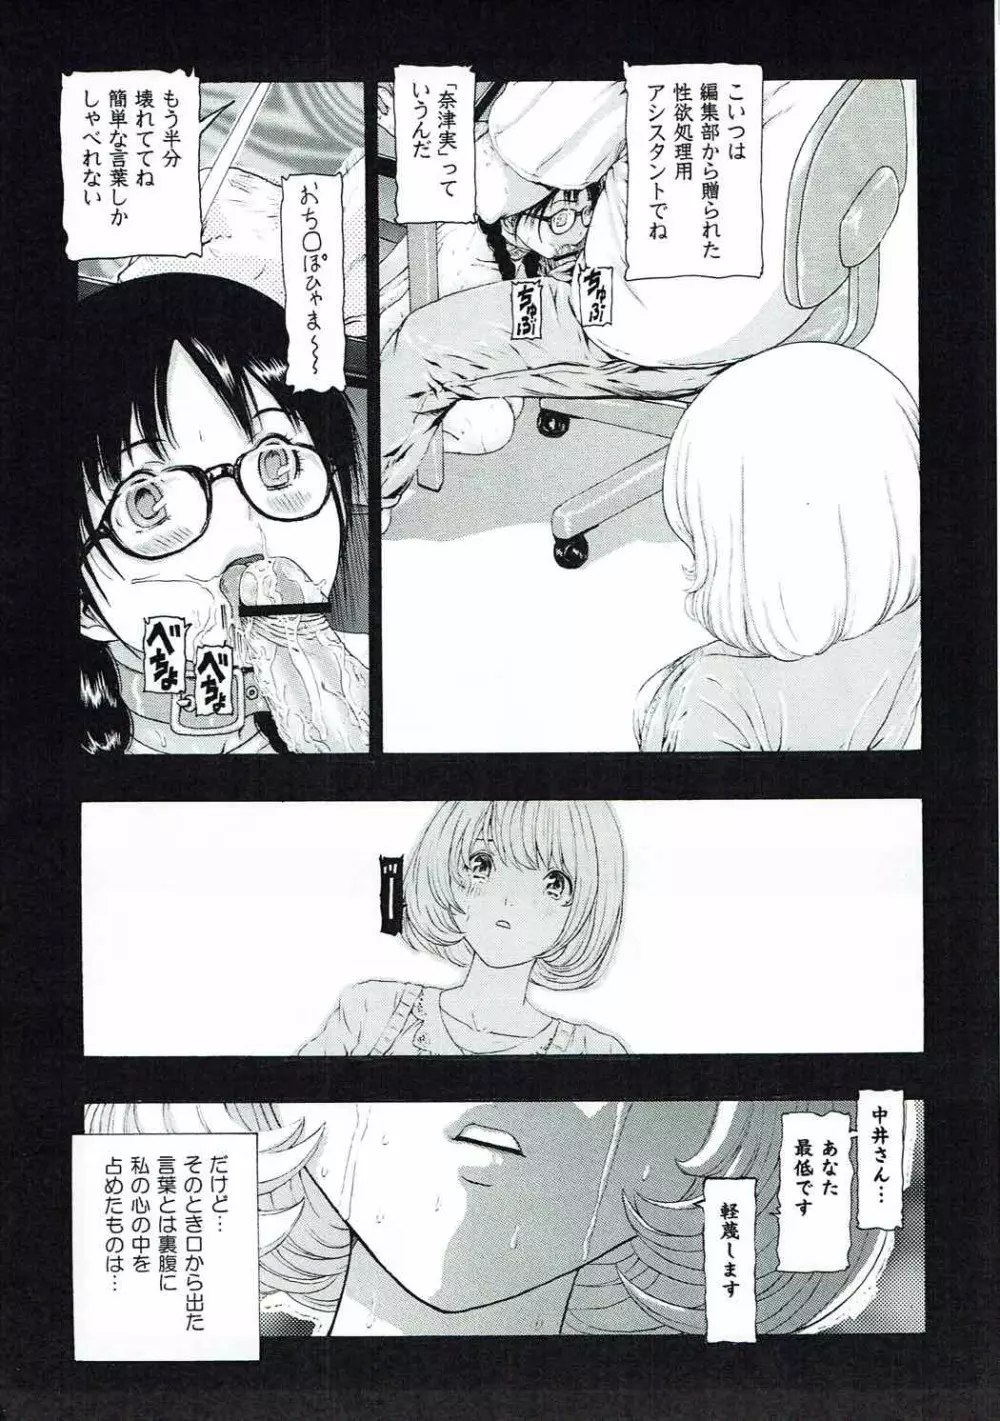 [け゜ぴけ゜ぴ (ぬャカな)] MANKOKU漫画家(とアシスタント)残酷物語 (バクマン。) 18ページ